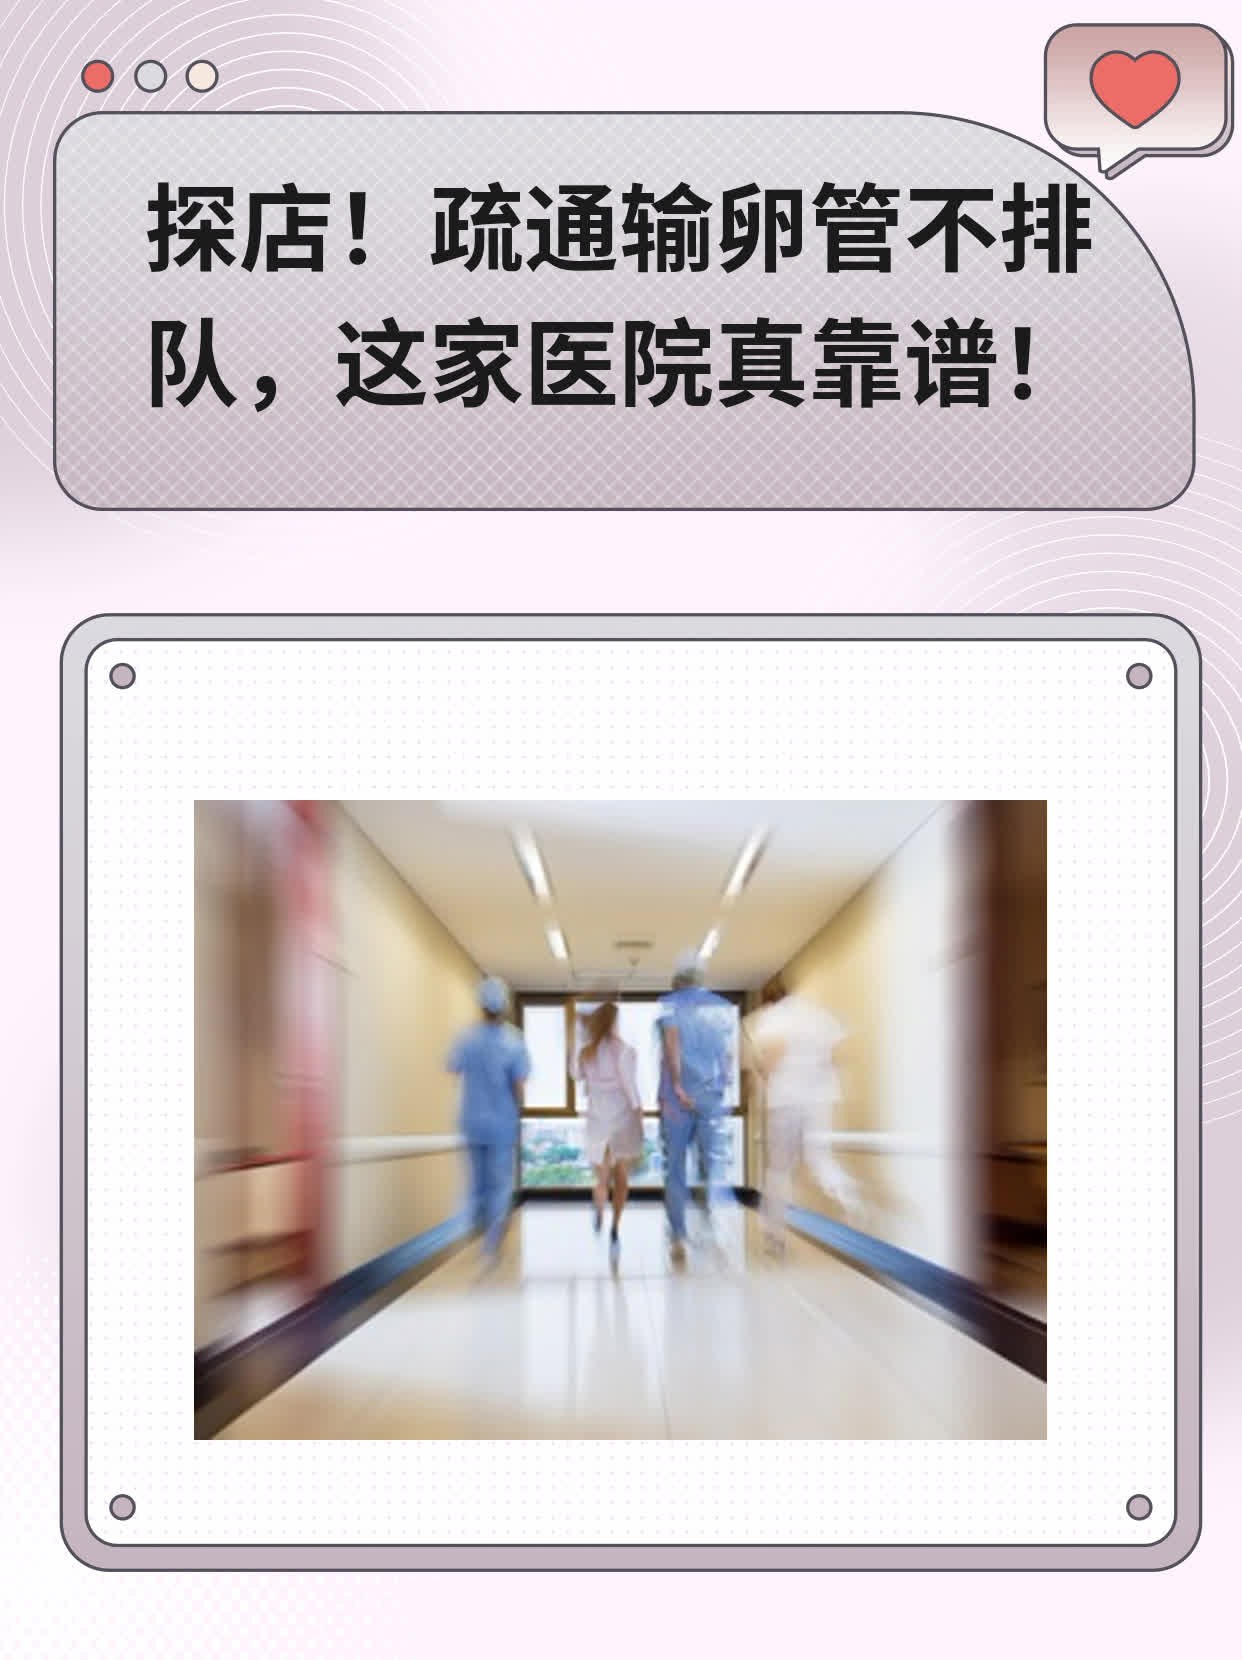 北京输卵管通而不畅病哪家医院比较好